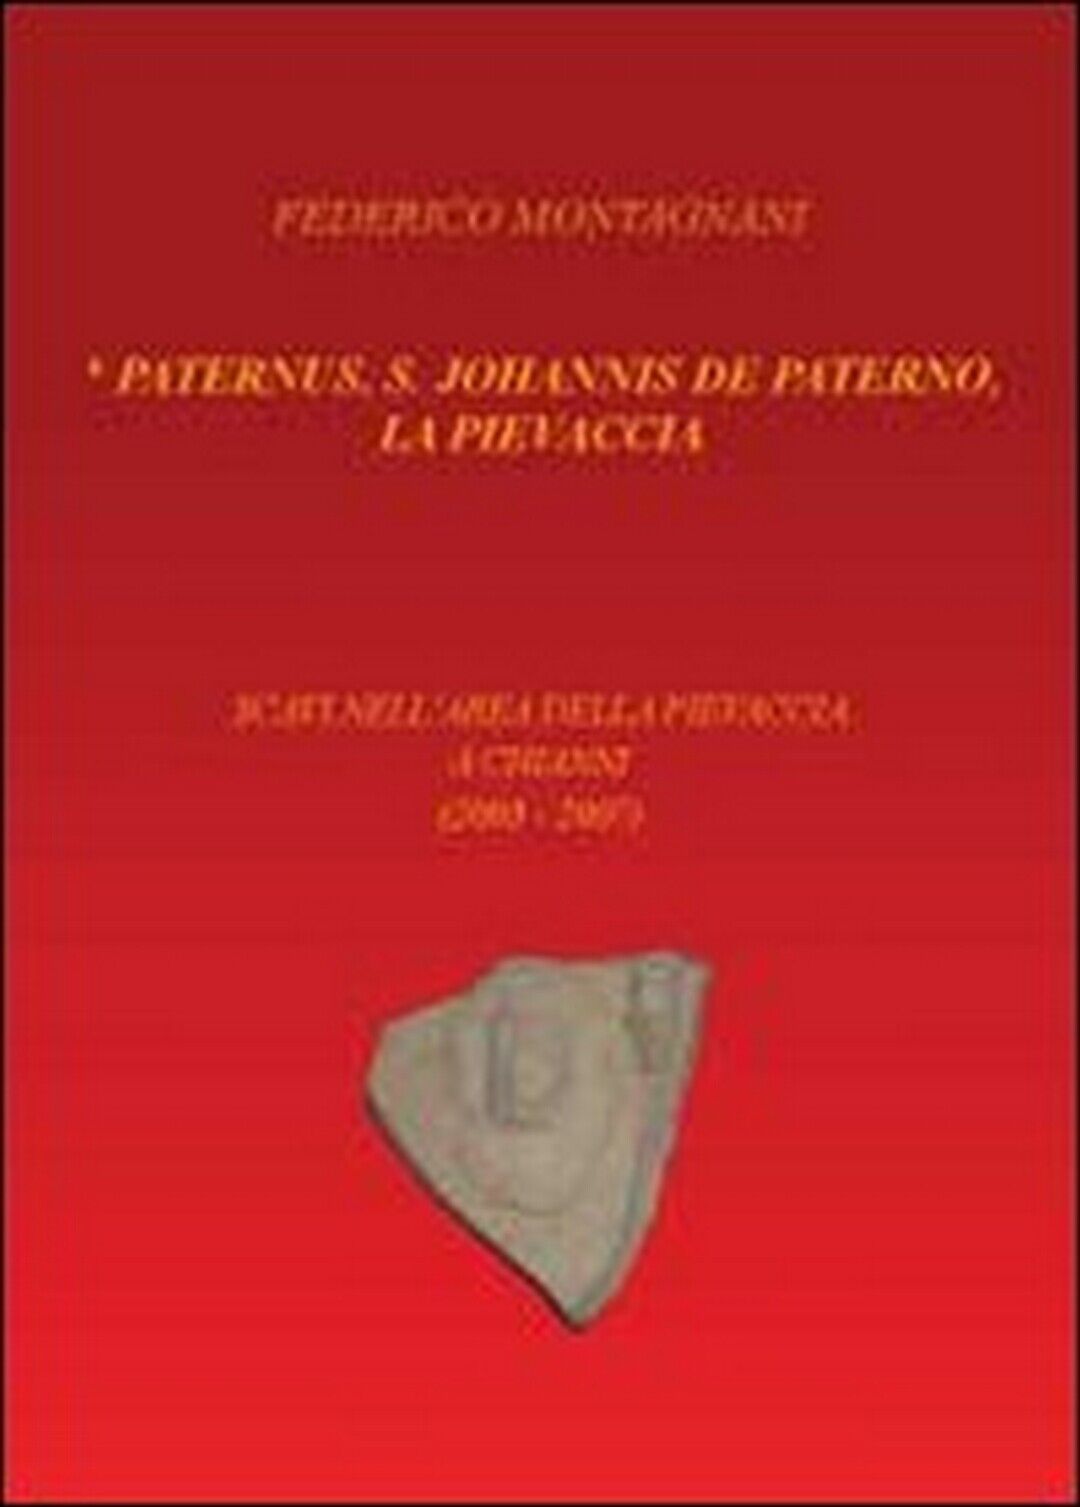 Paternus, S. Johannis De Paterno, la Pievaccia. Scavi nelL'area della Pievaccia  libro usato